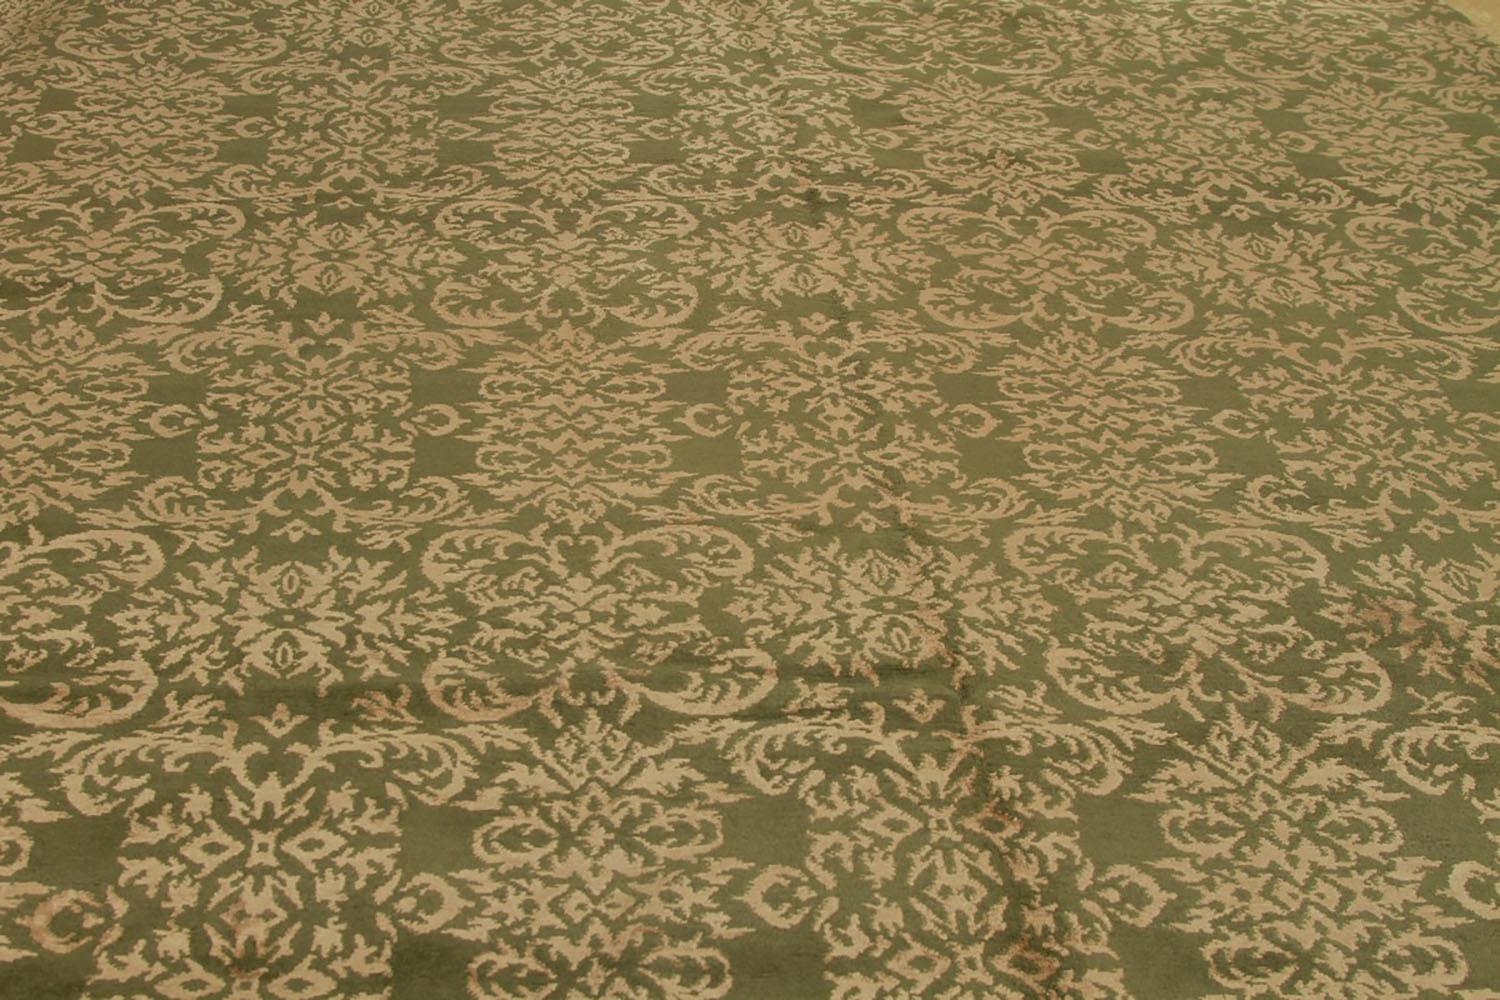 Noué à la main en laine et en soie lumineuse, cet ajout de 8 x 10 à la collection de tapis européens de Rug & Kilim dépeint un jeu magistral de couleurs et de motifs affectueusement surnommé 